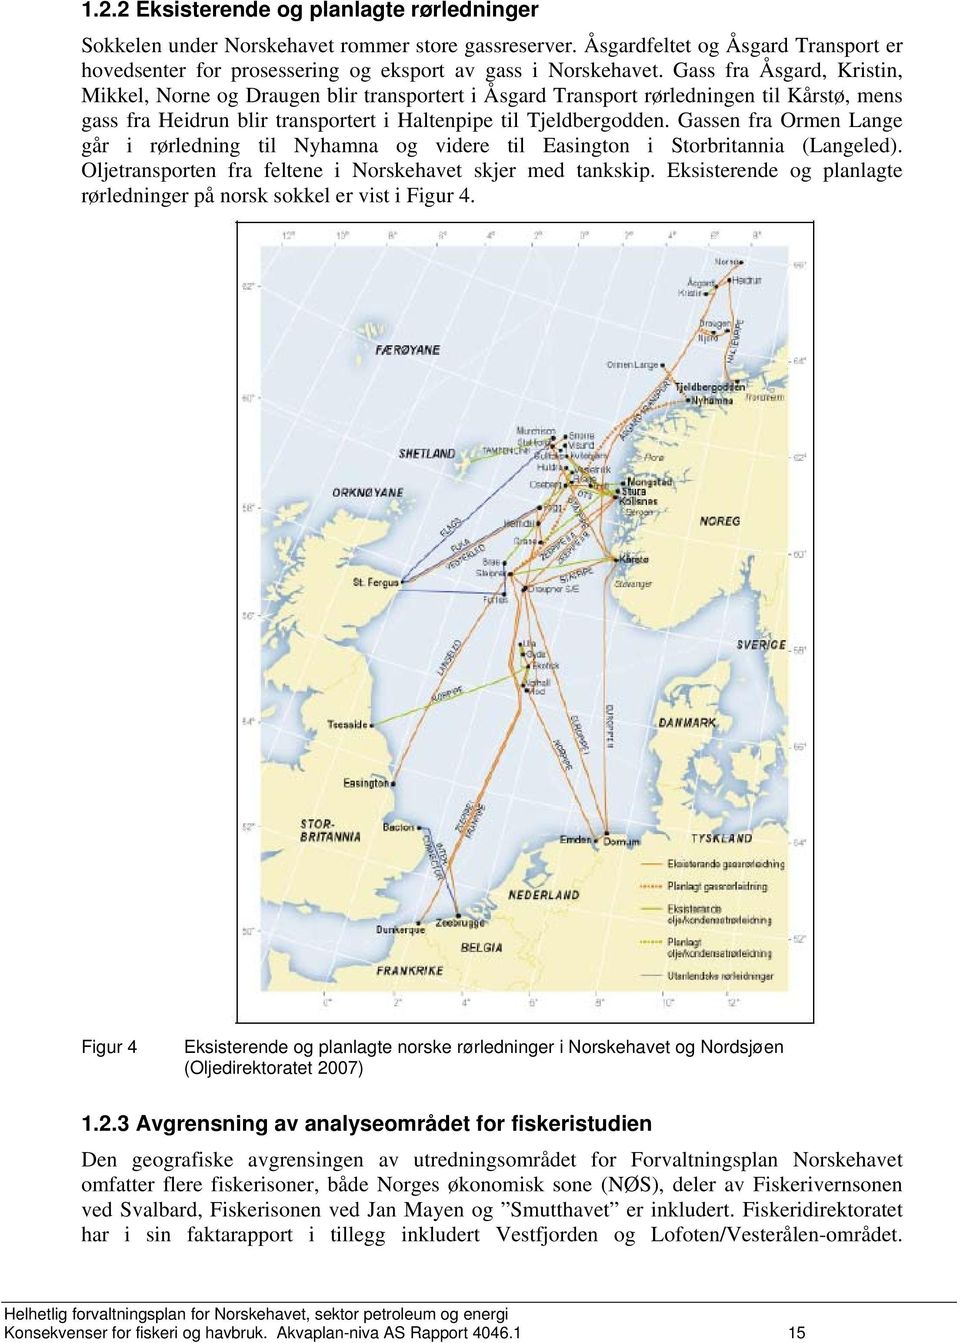 Gassen fra Ormen Lange går i rørledning til Nyhamna og videre til Easington i Storbritannia (Langeled). Oljetransporten fra feltene i Norskehavet skjer med tankskip.